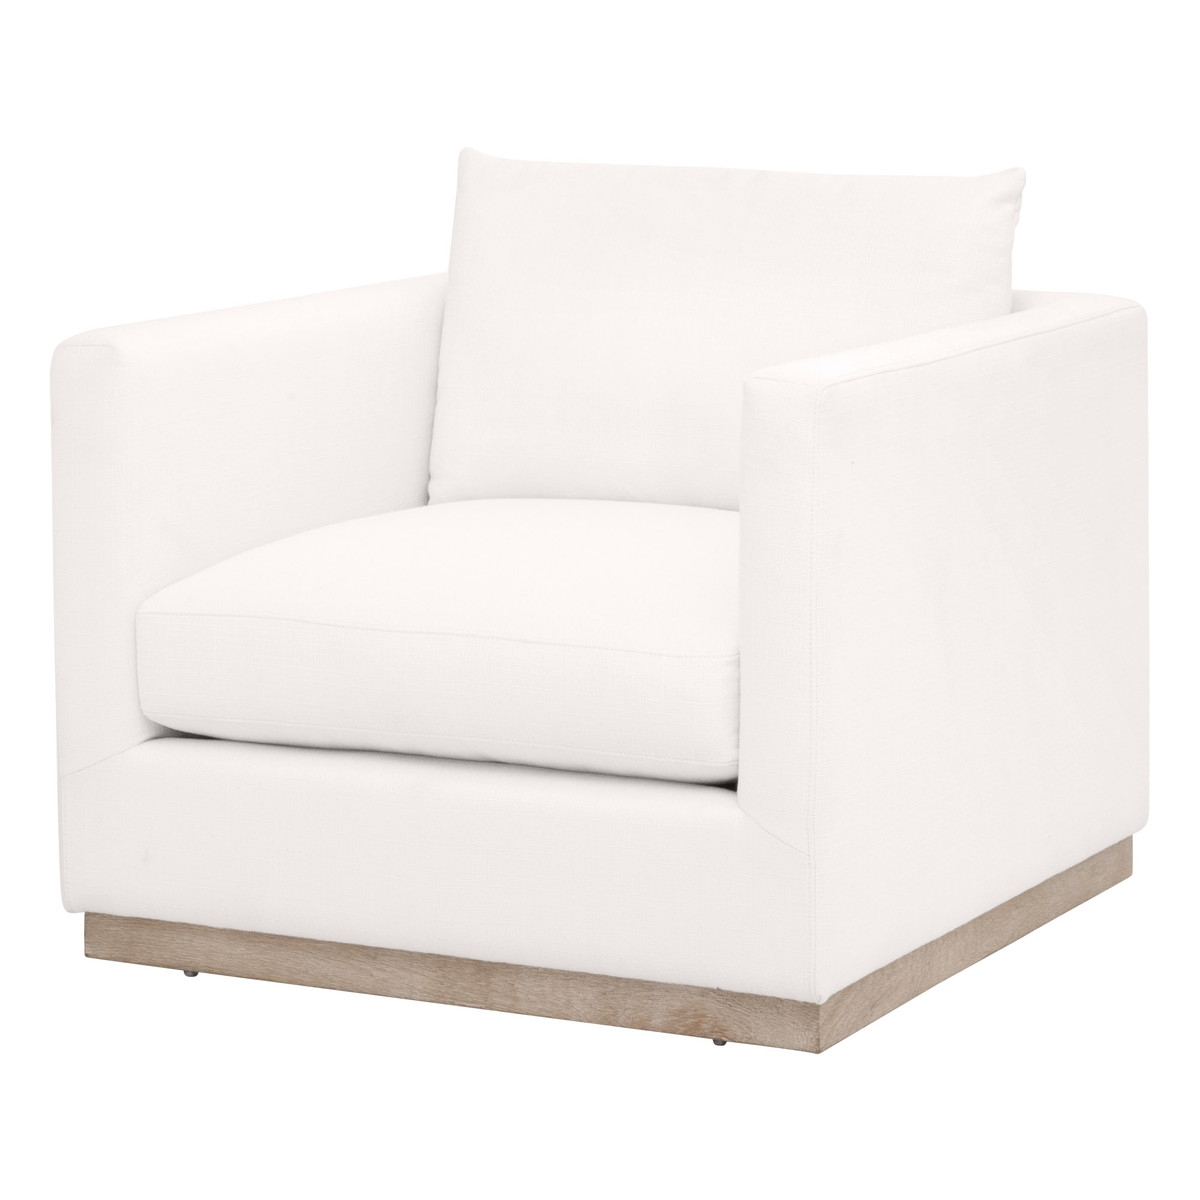 Lana Plinth Base Arm Chair, Ivory - Image 1